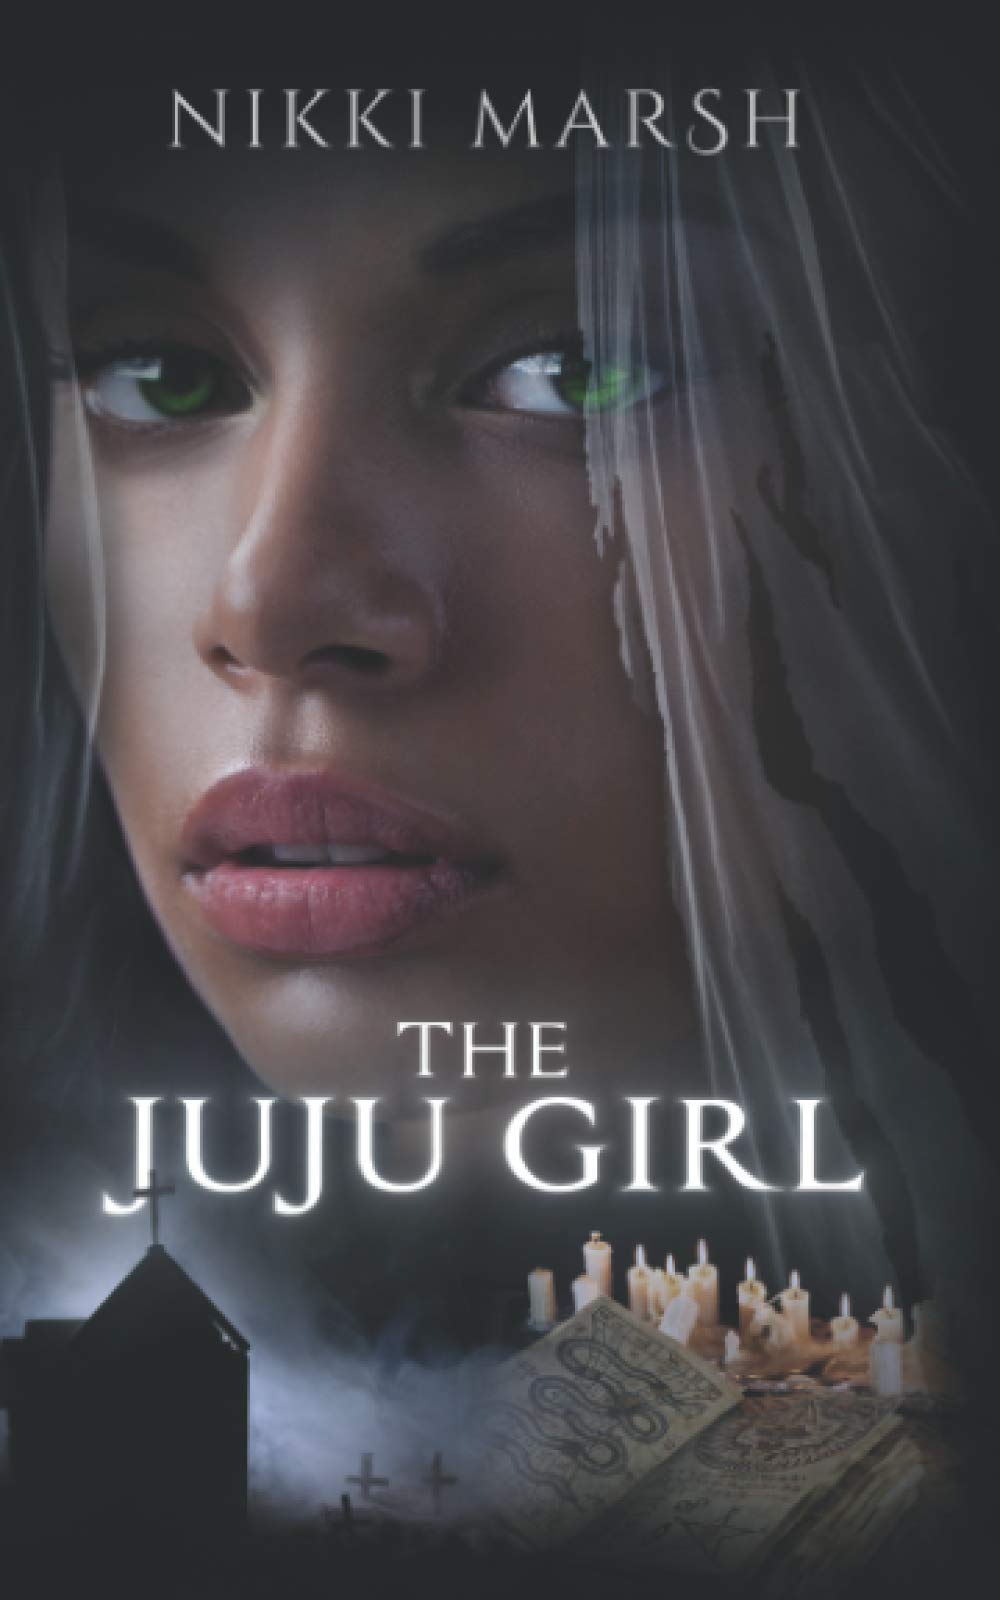 The Juju Girl